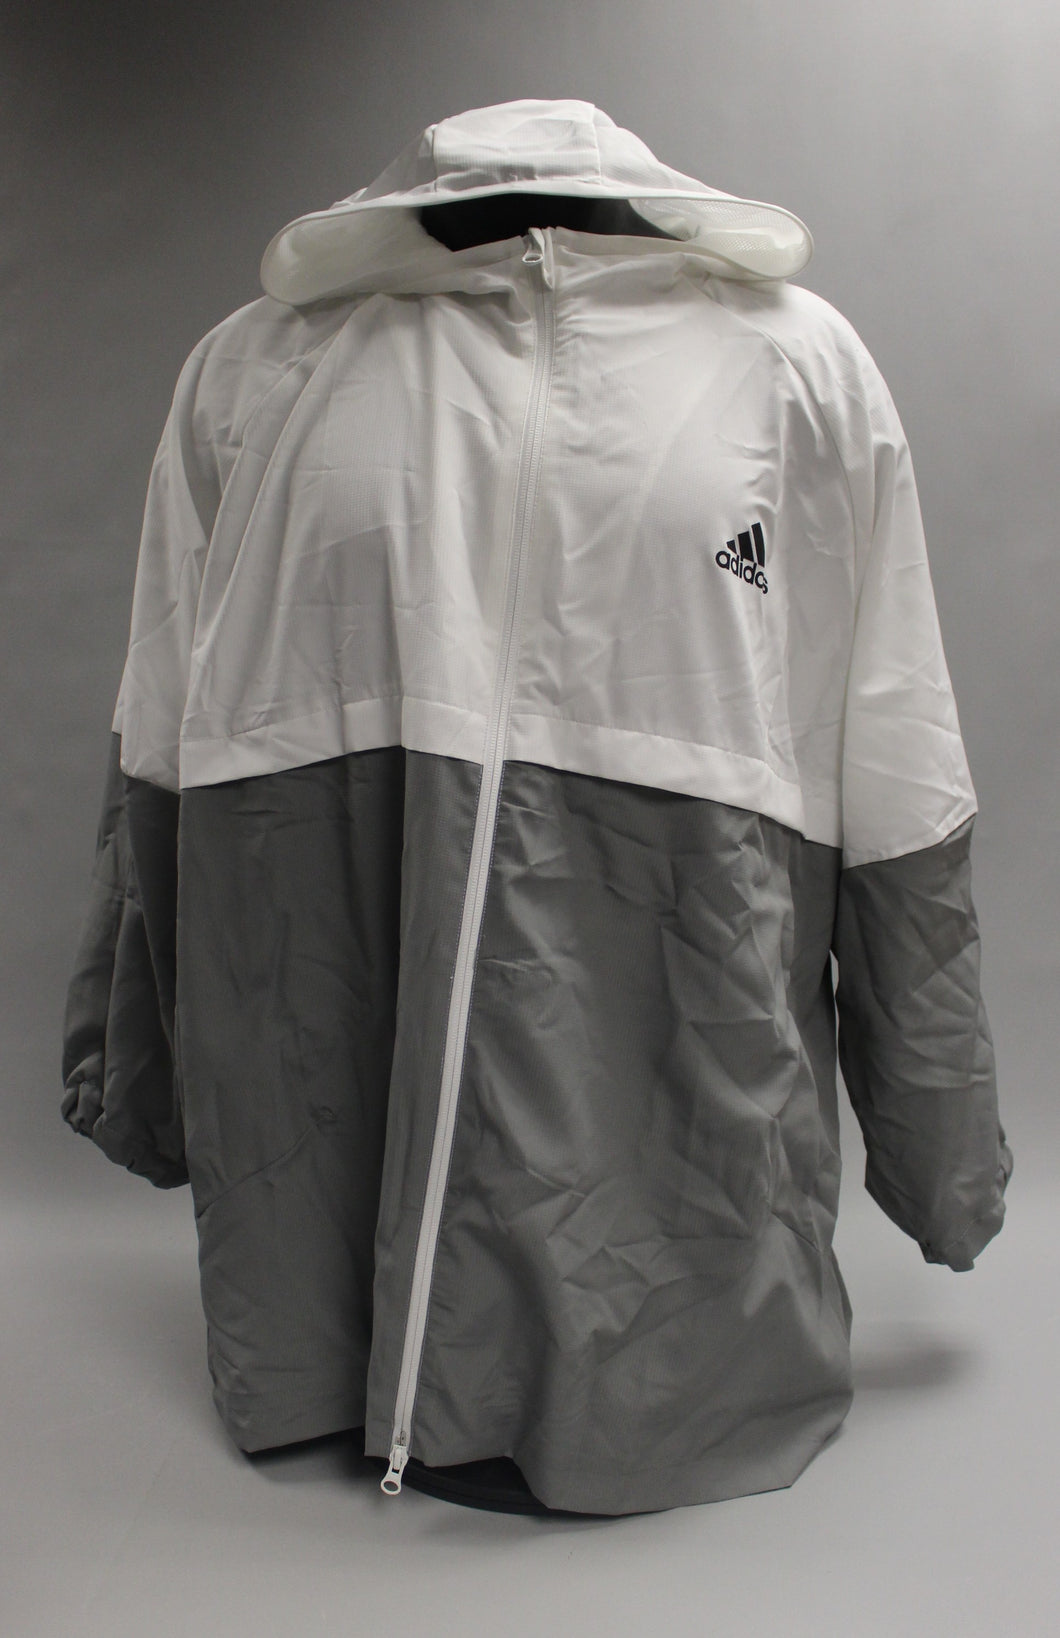 grey and white adidas jacket